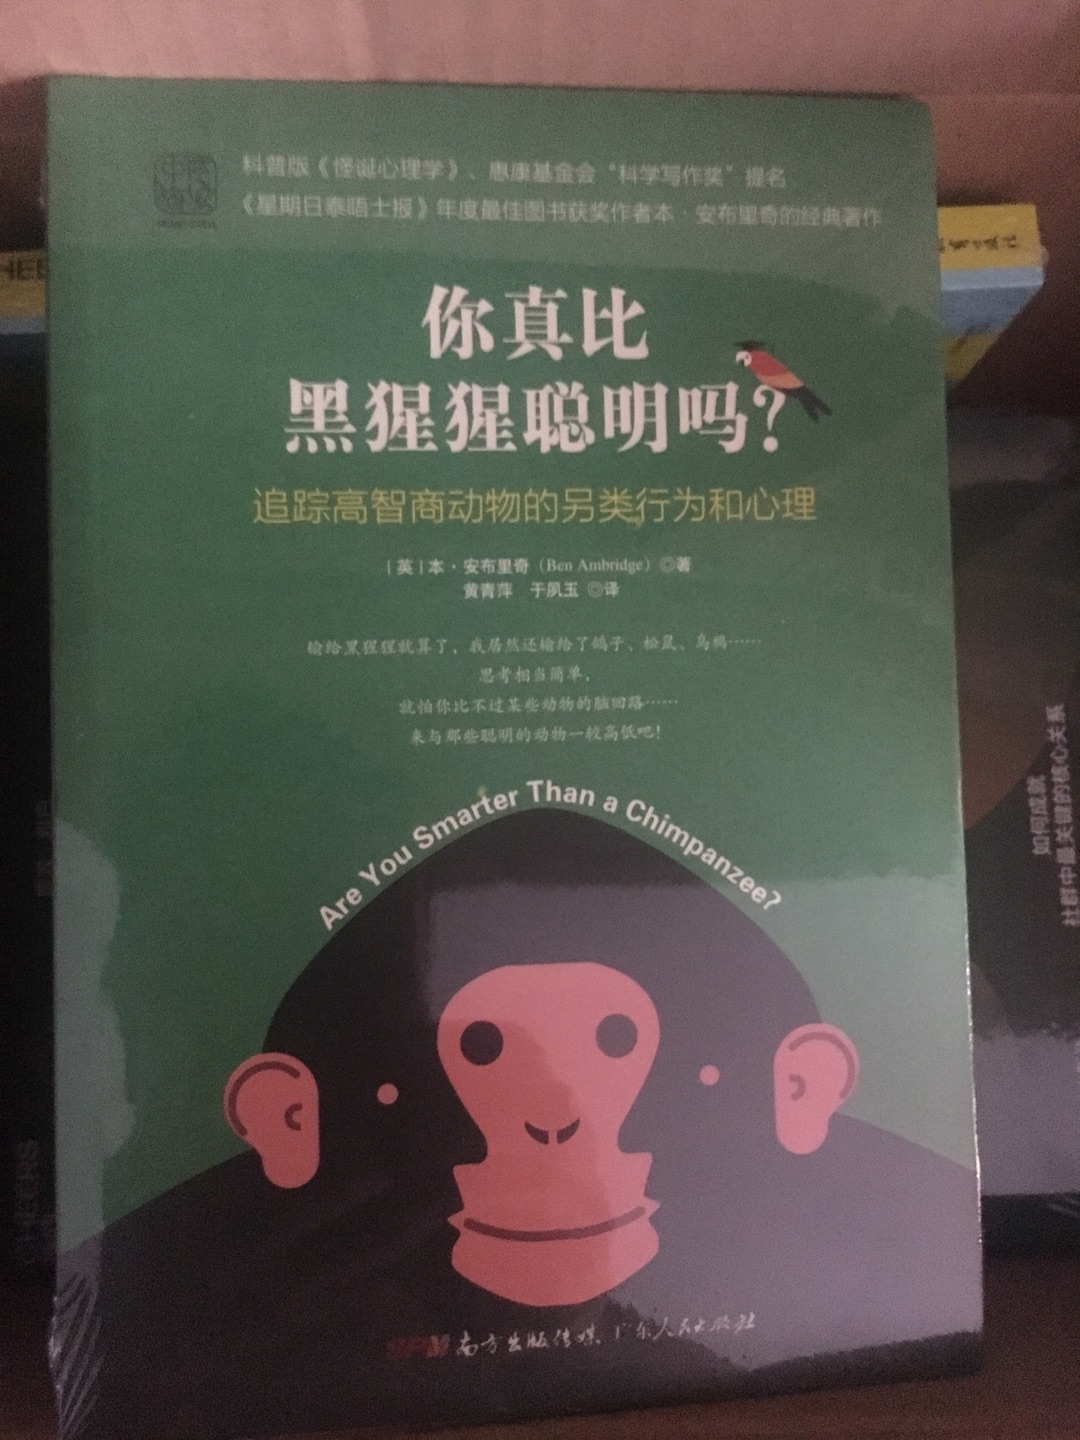 人猿同宗，行为举止也有很多相似之处，读读这本书一定会受益良多。